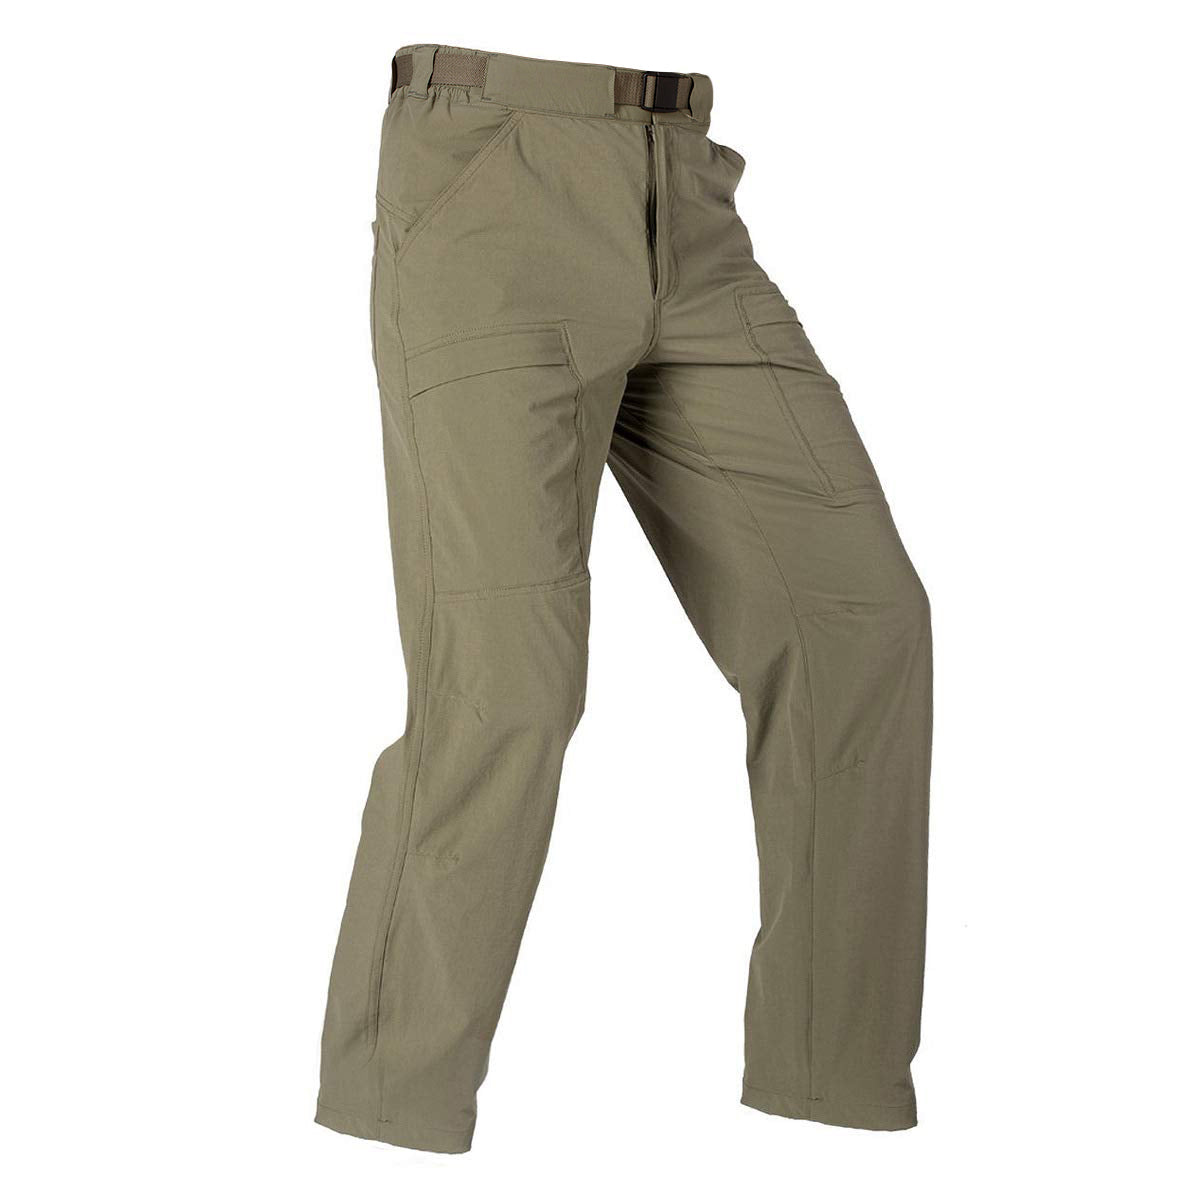 Quick Dry Cargo Pants Nylon Spandex